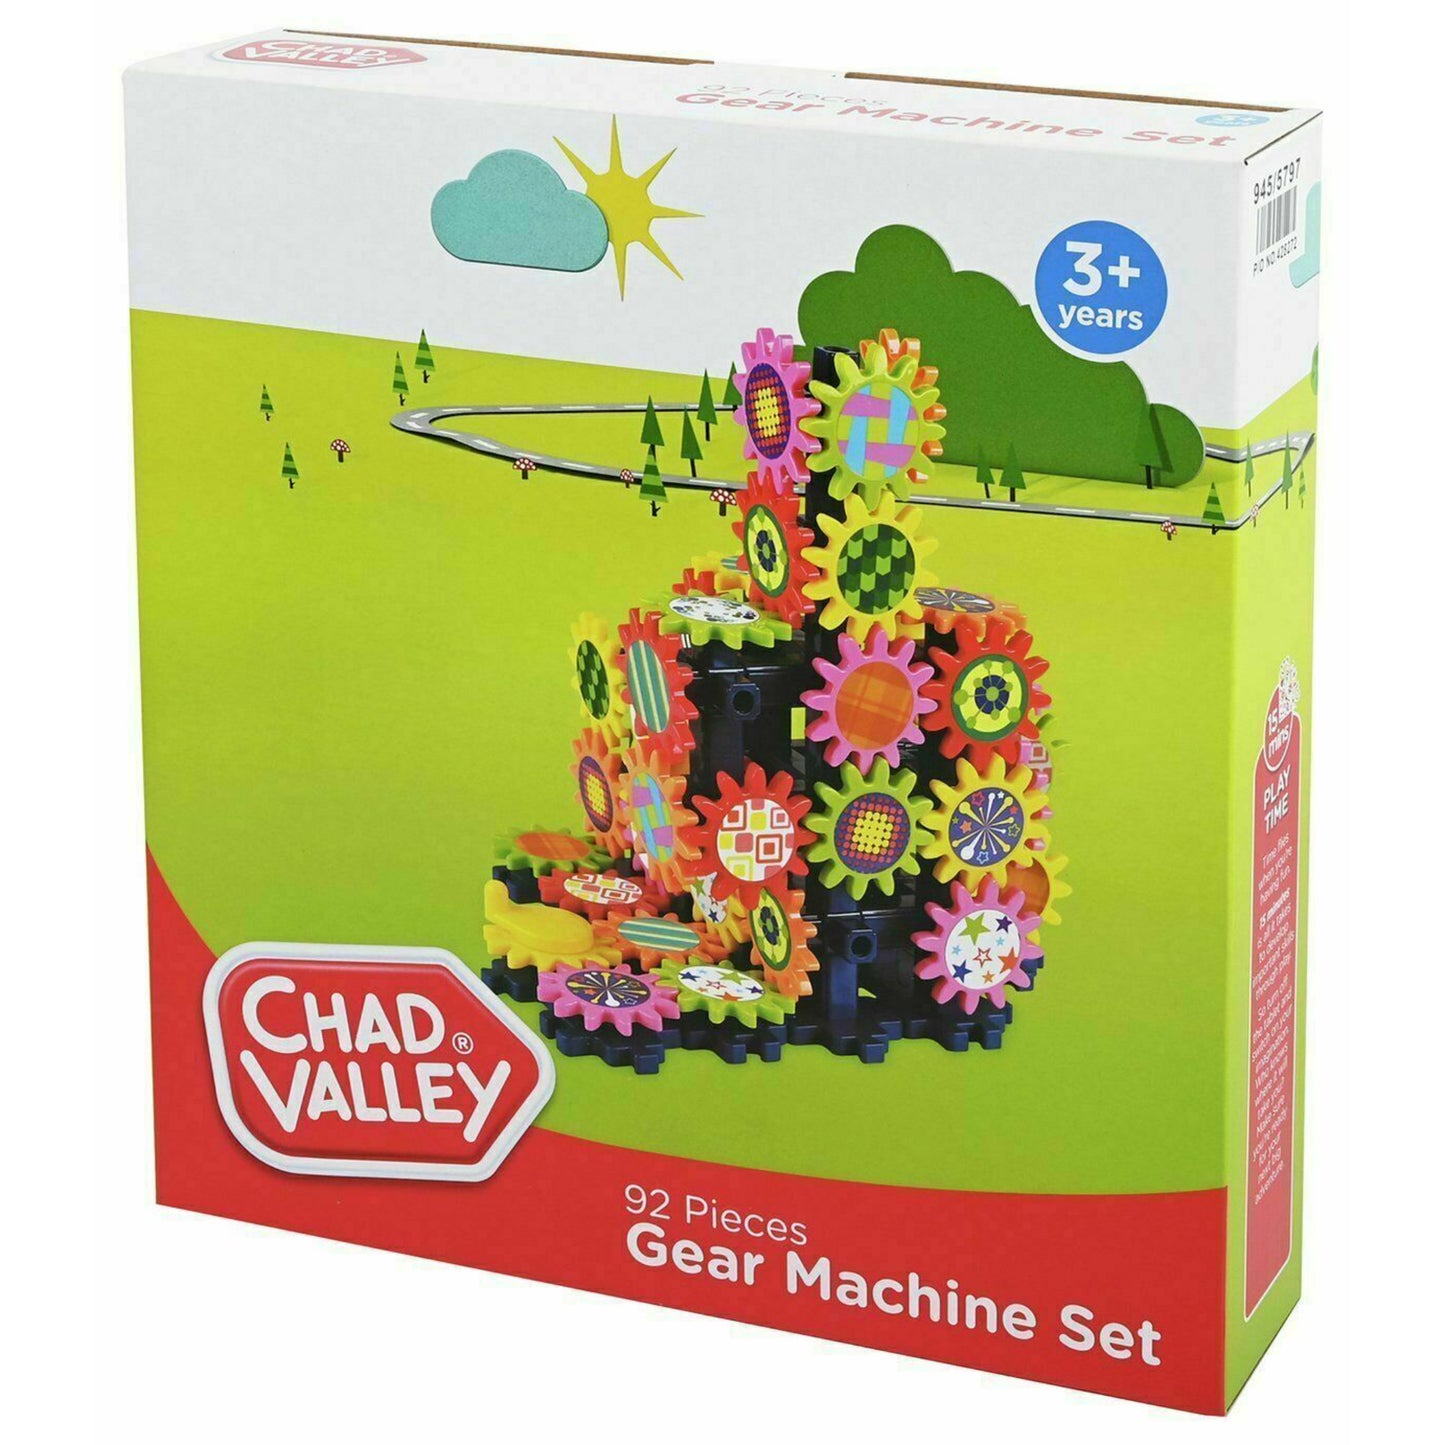 Chad Valley - 92 Piece Gear Machine Set